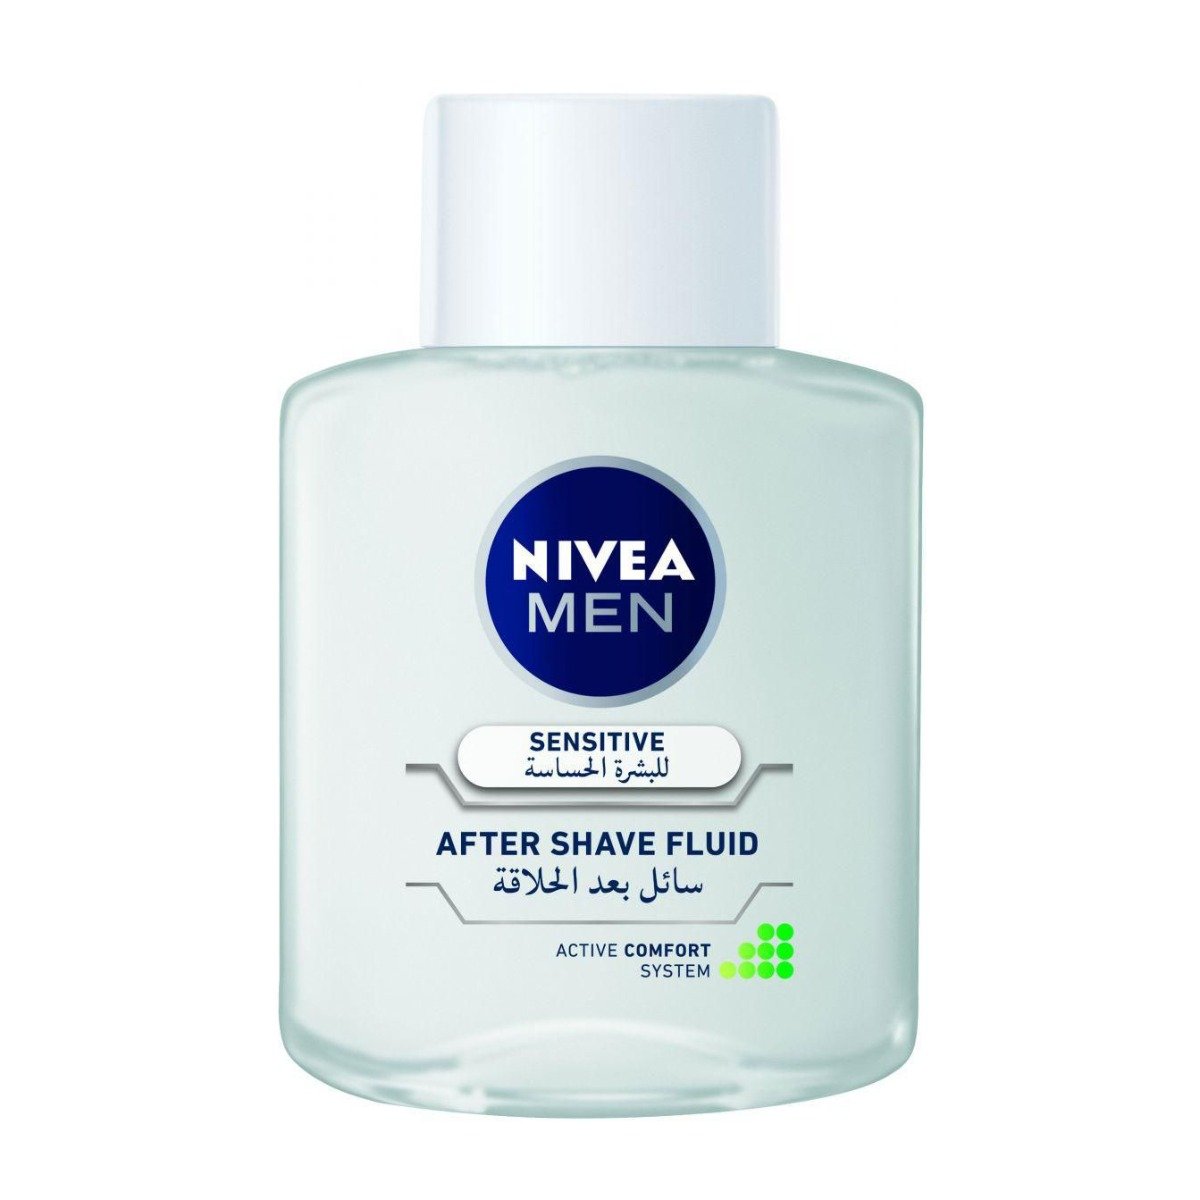 Nivea Men Sensitive After Shave Fluid – 100ml - Bloom Pharmacy